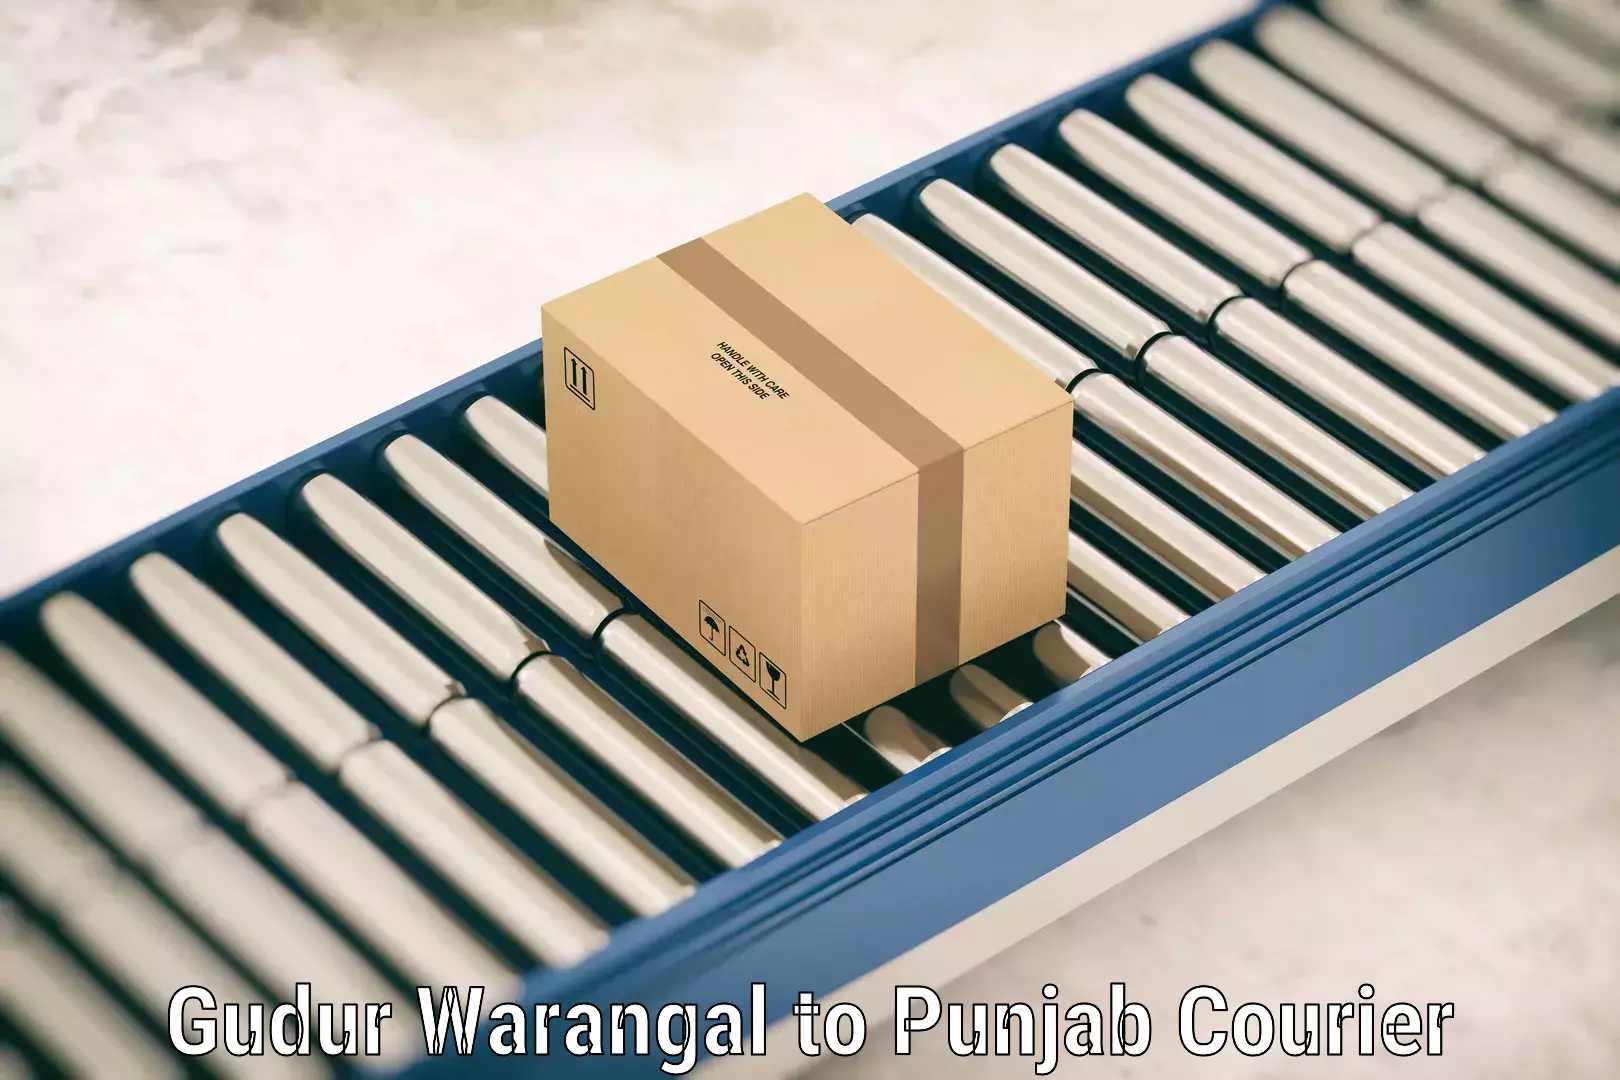 Baggage transport scheduler Gudur Warangal to Punjab